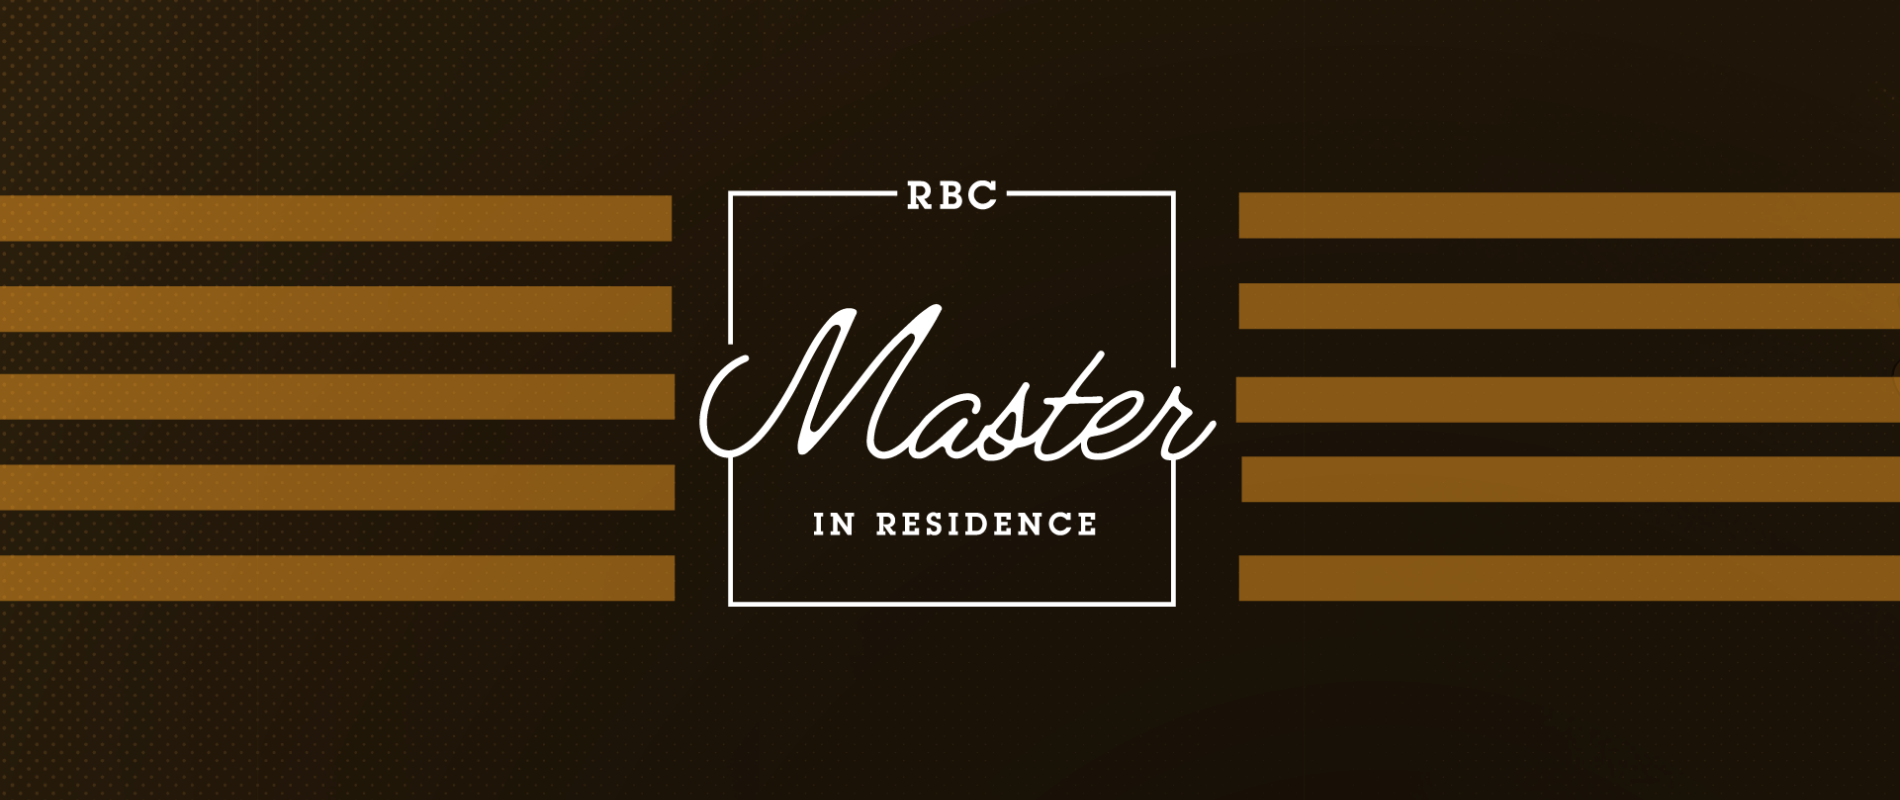 Programme des Maîtres en résidence RBC